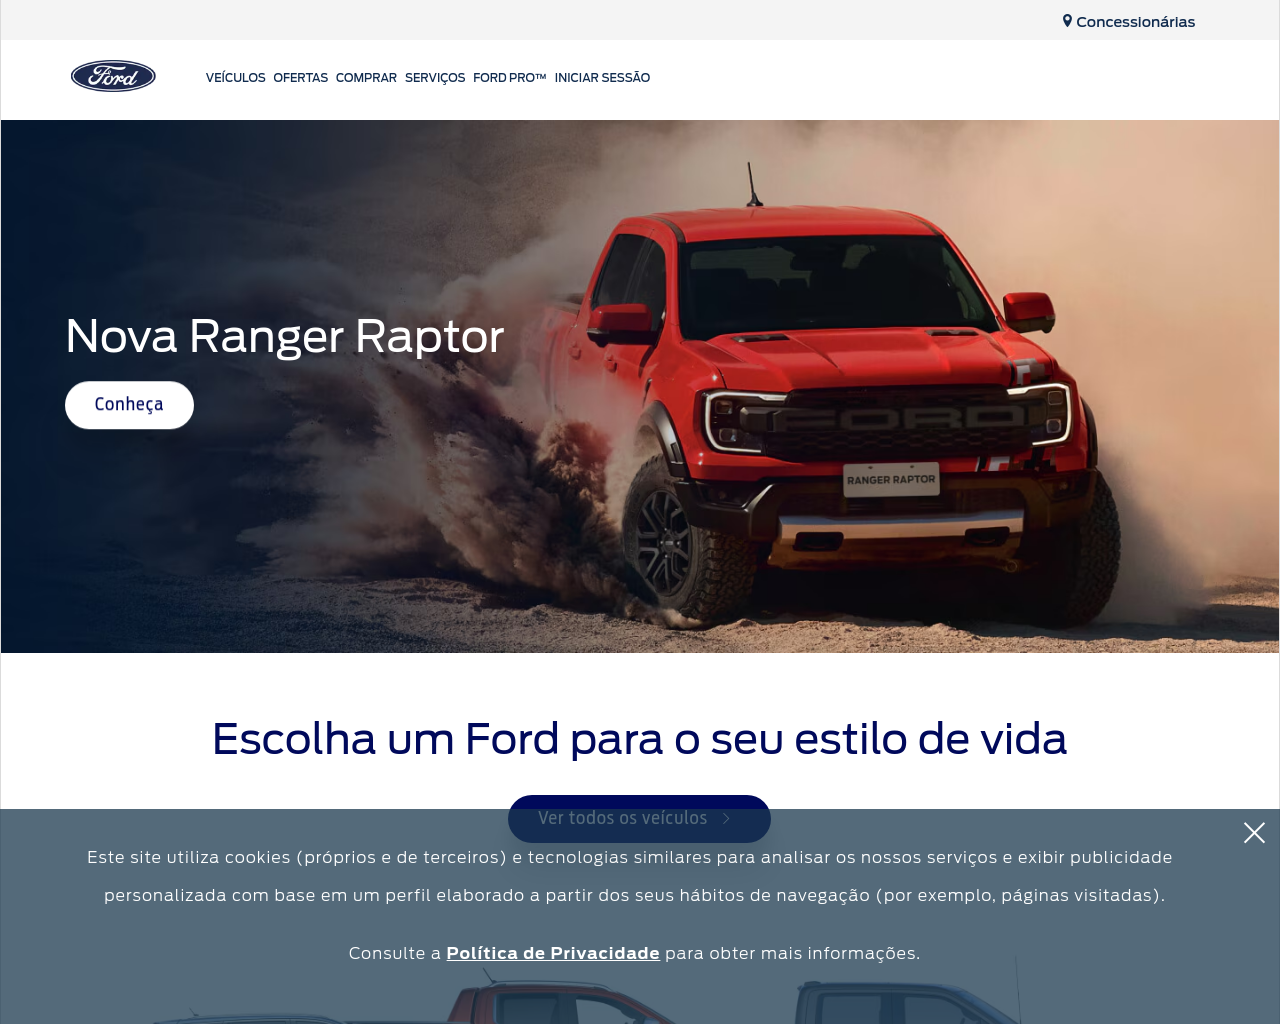 ford.com.br